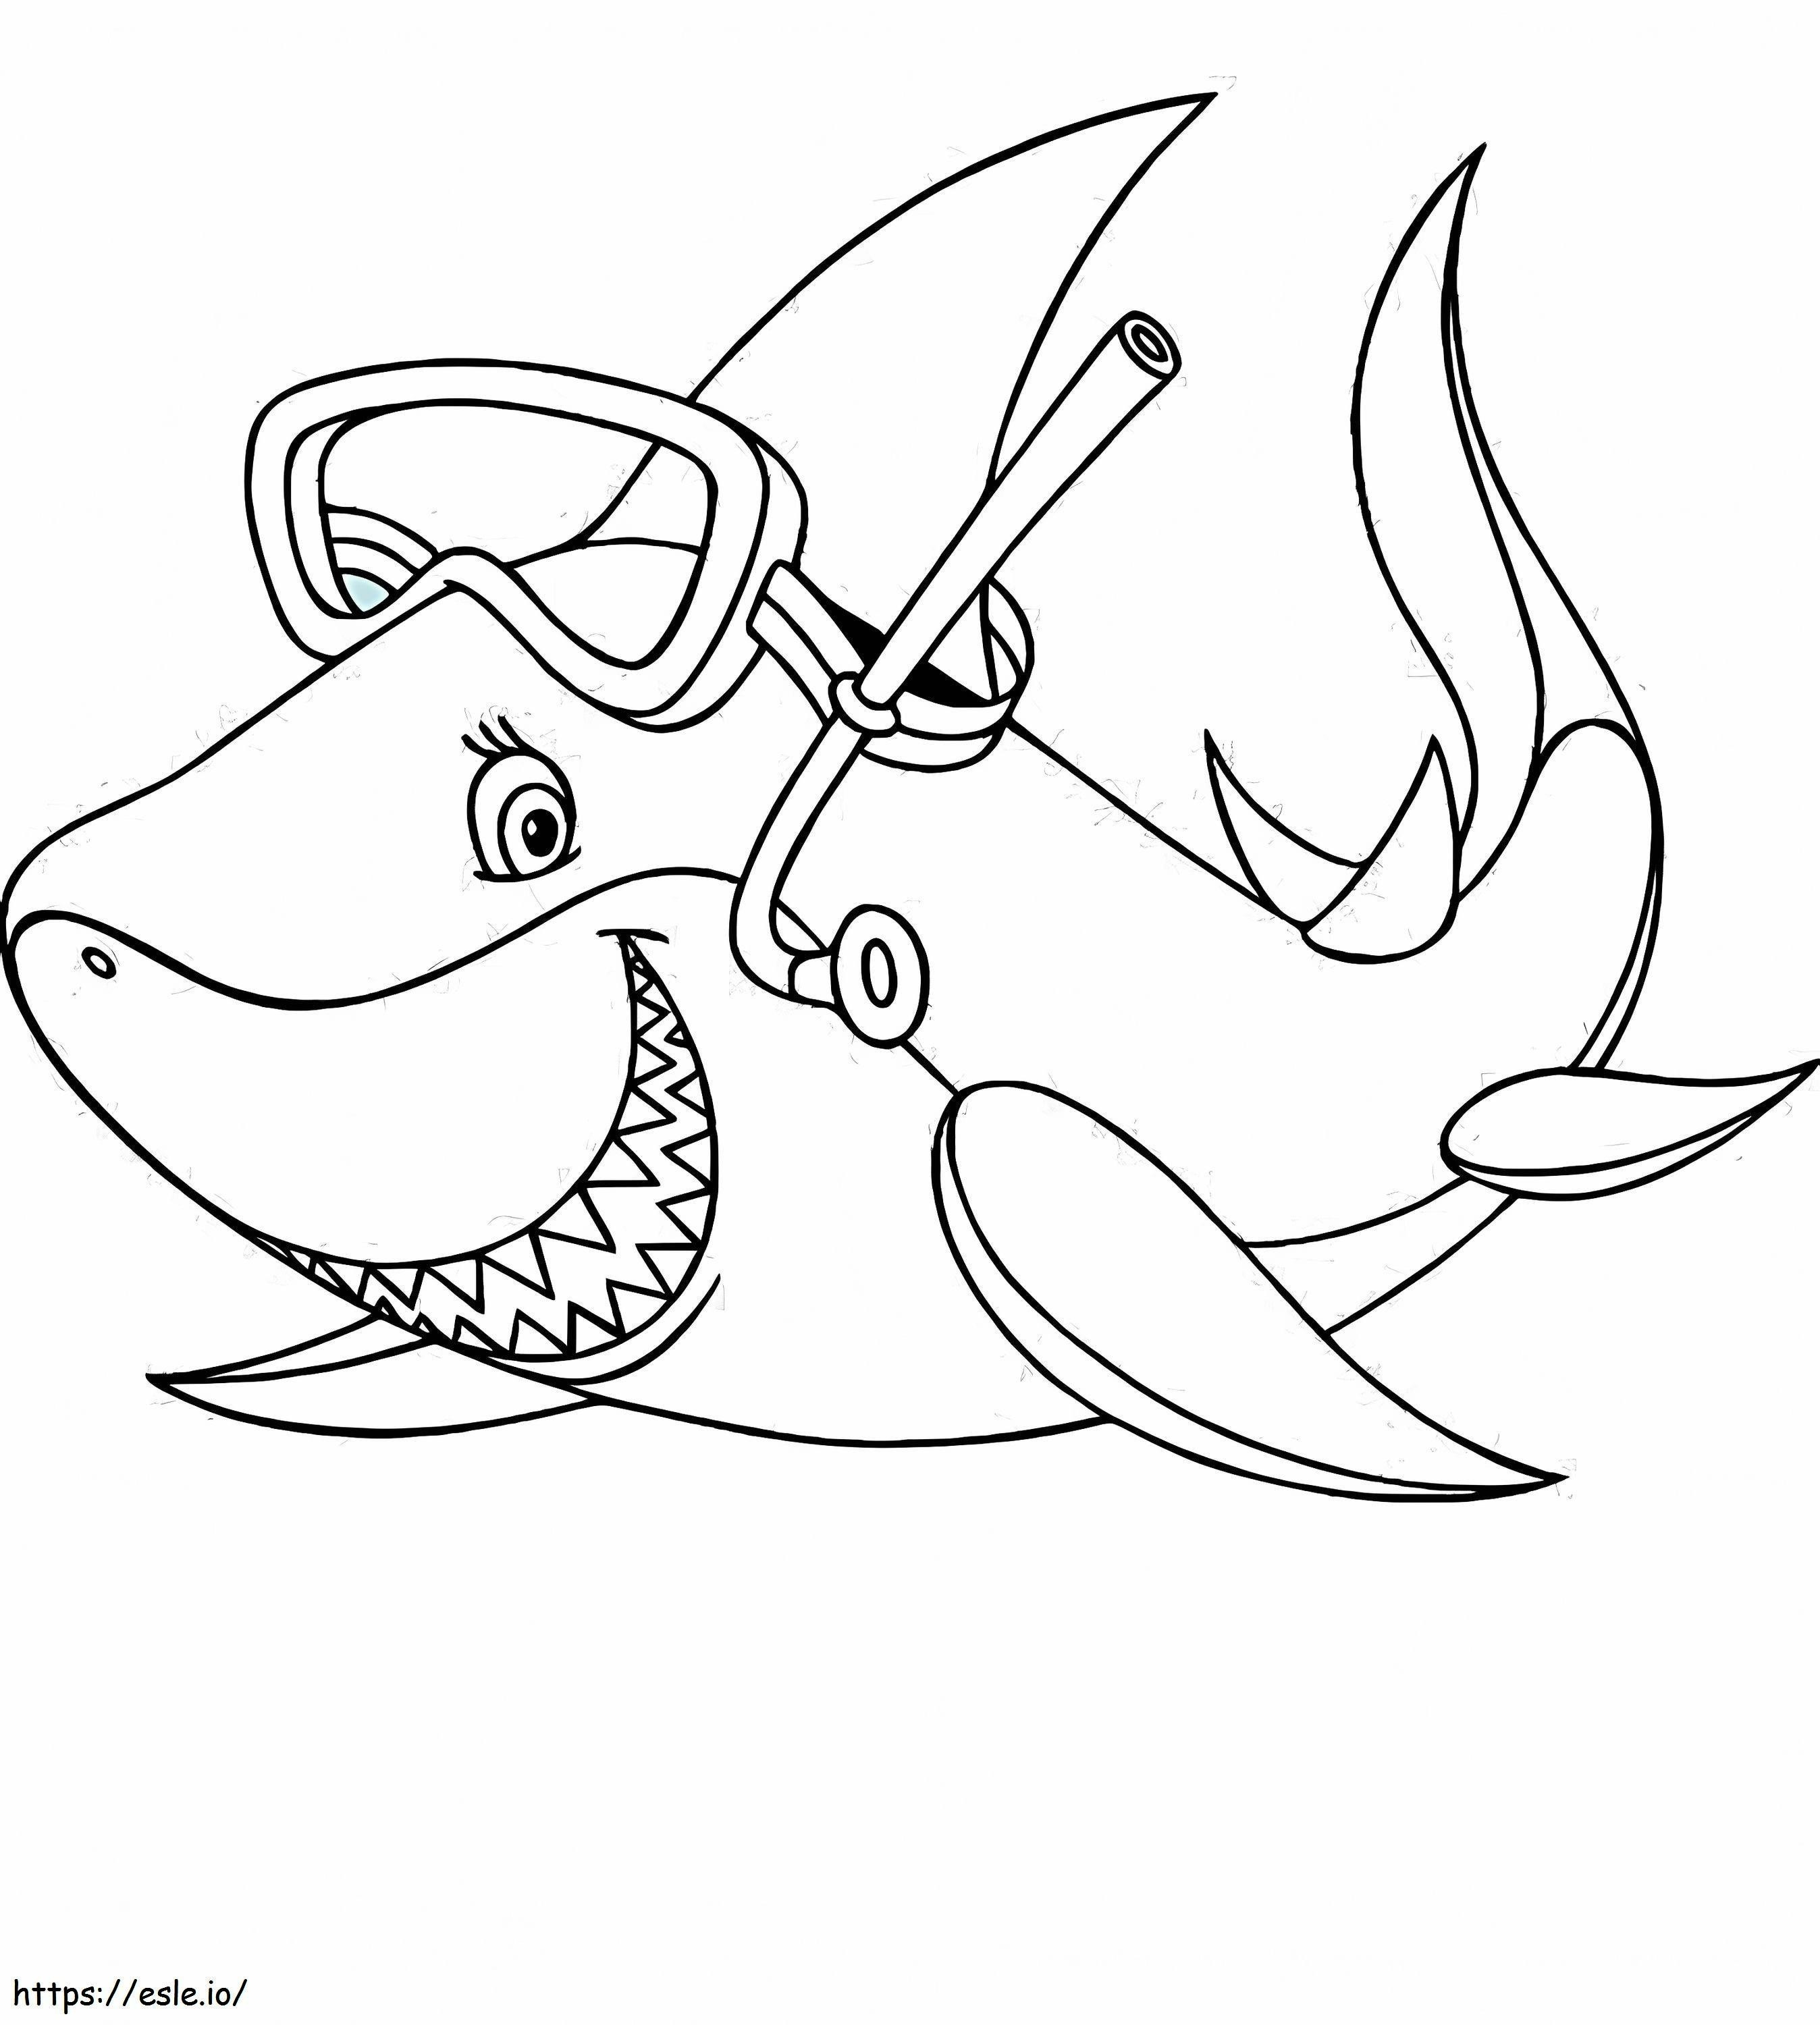 1541748815_Kleurplaat van een haai Nieuwe haai van een haai kleurplaat kleurplaat